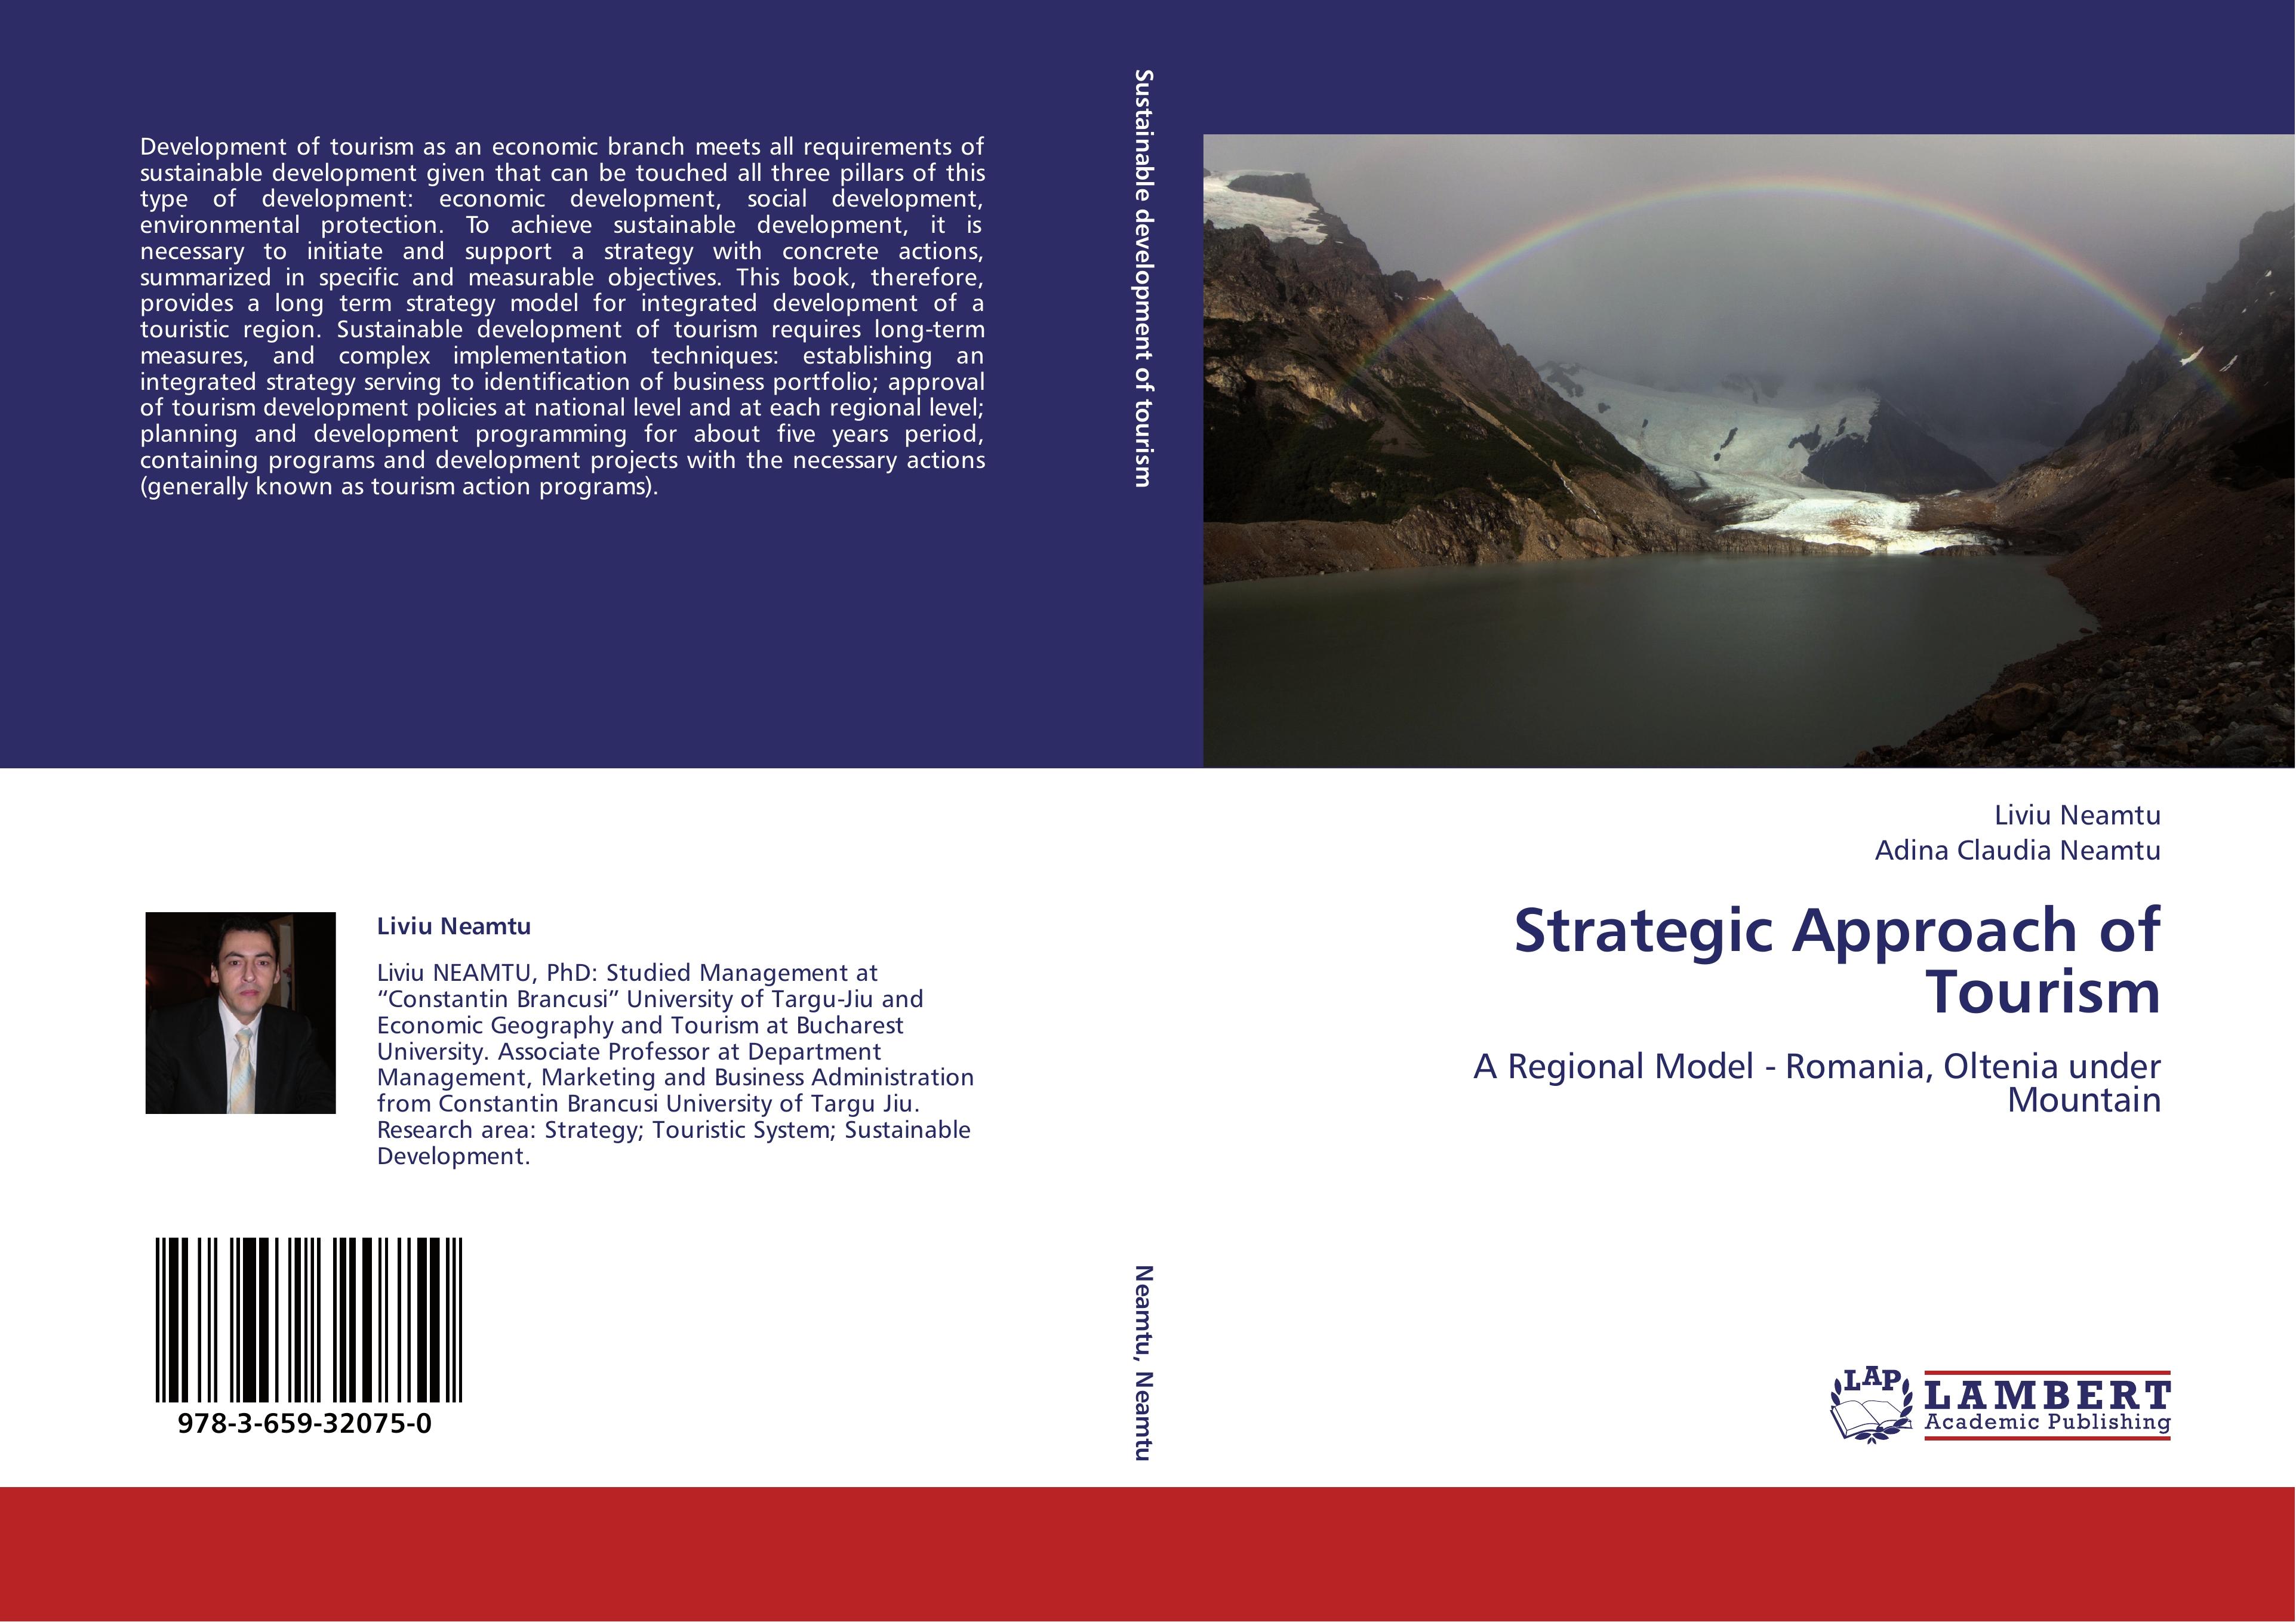 Strategic Approach of Tourism - Liviu Neamtu Adina Claudia Neamtu